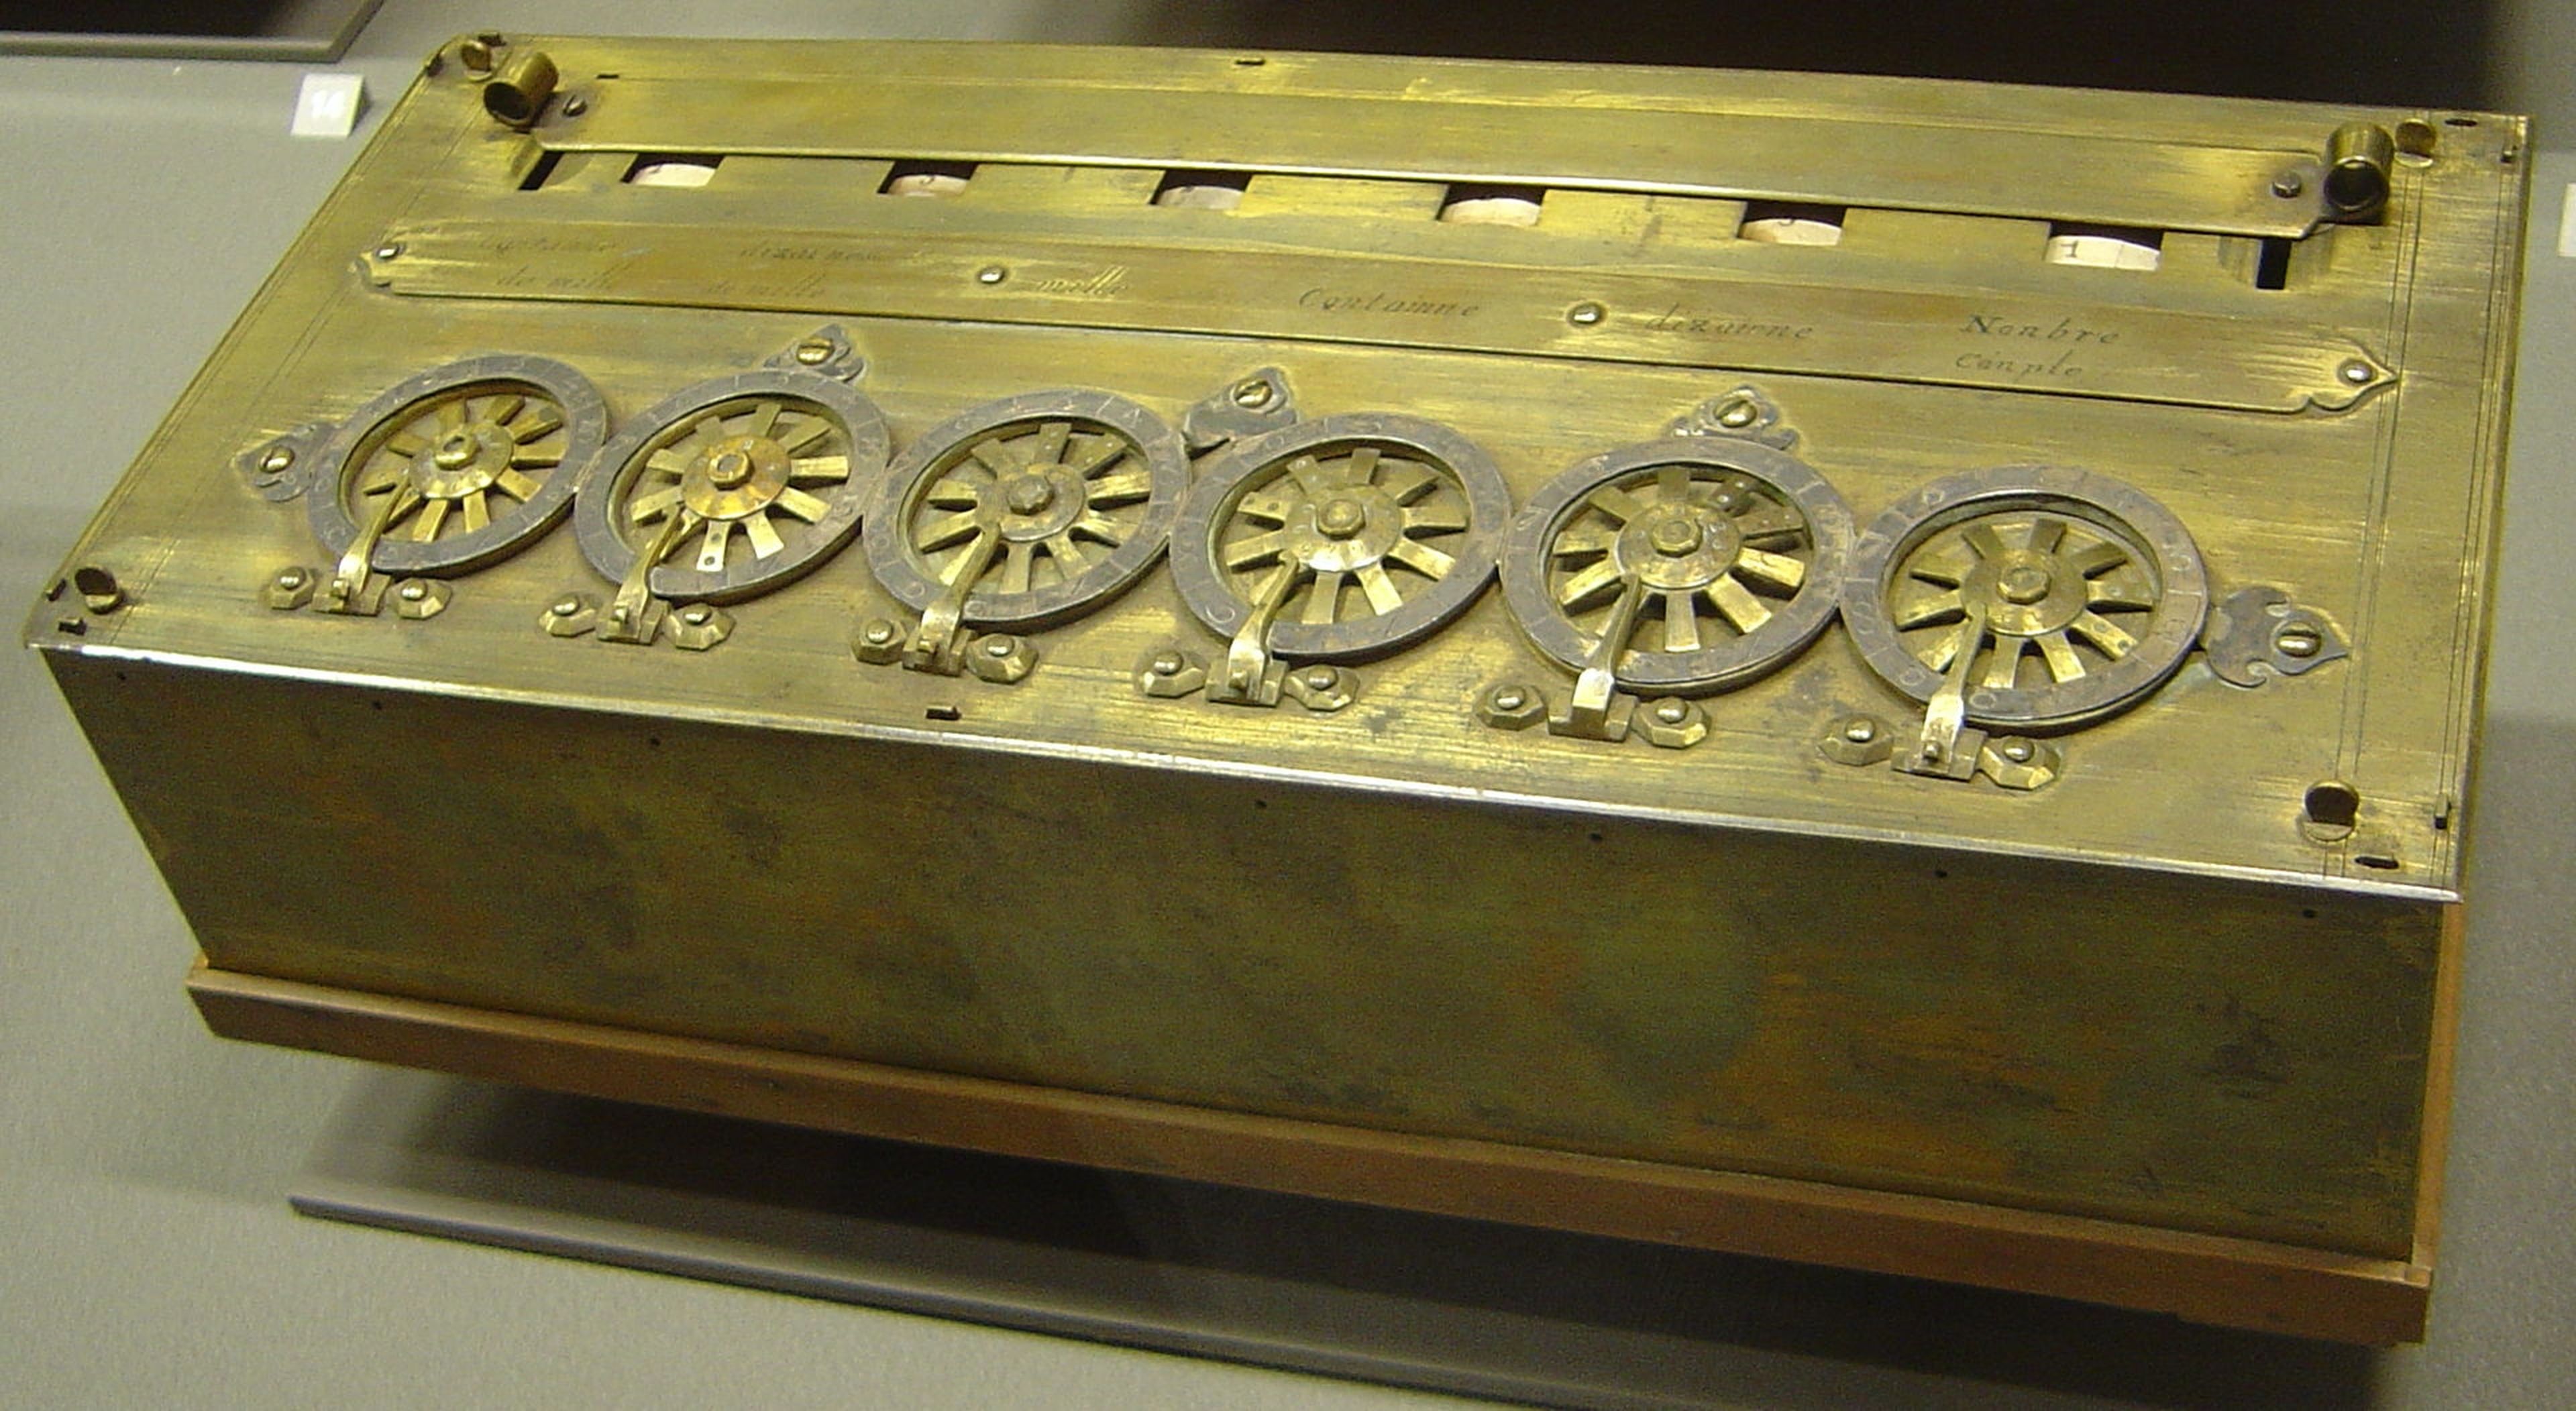 La primera calculadora mecánica, la Pascalina, se inventó hace 381 años, y aún nos asombra